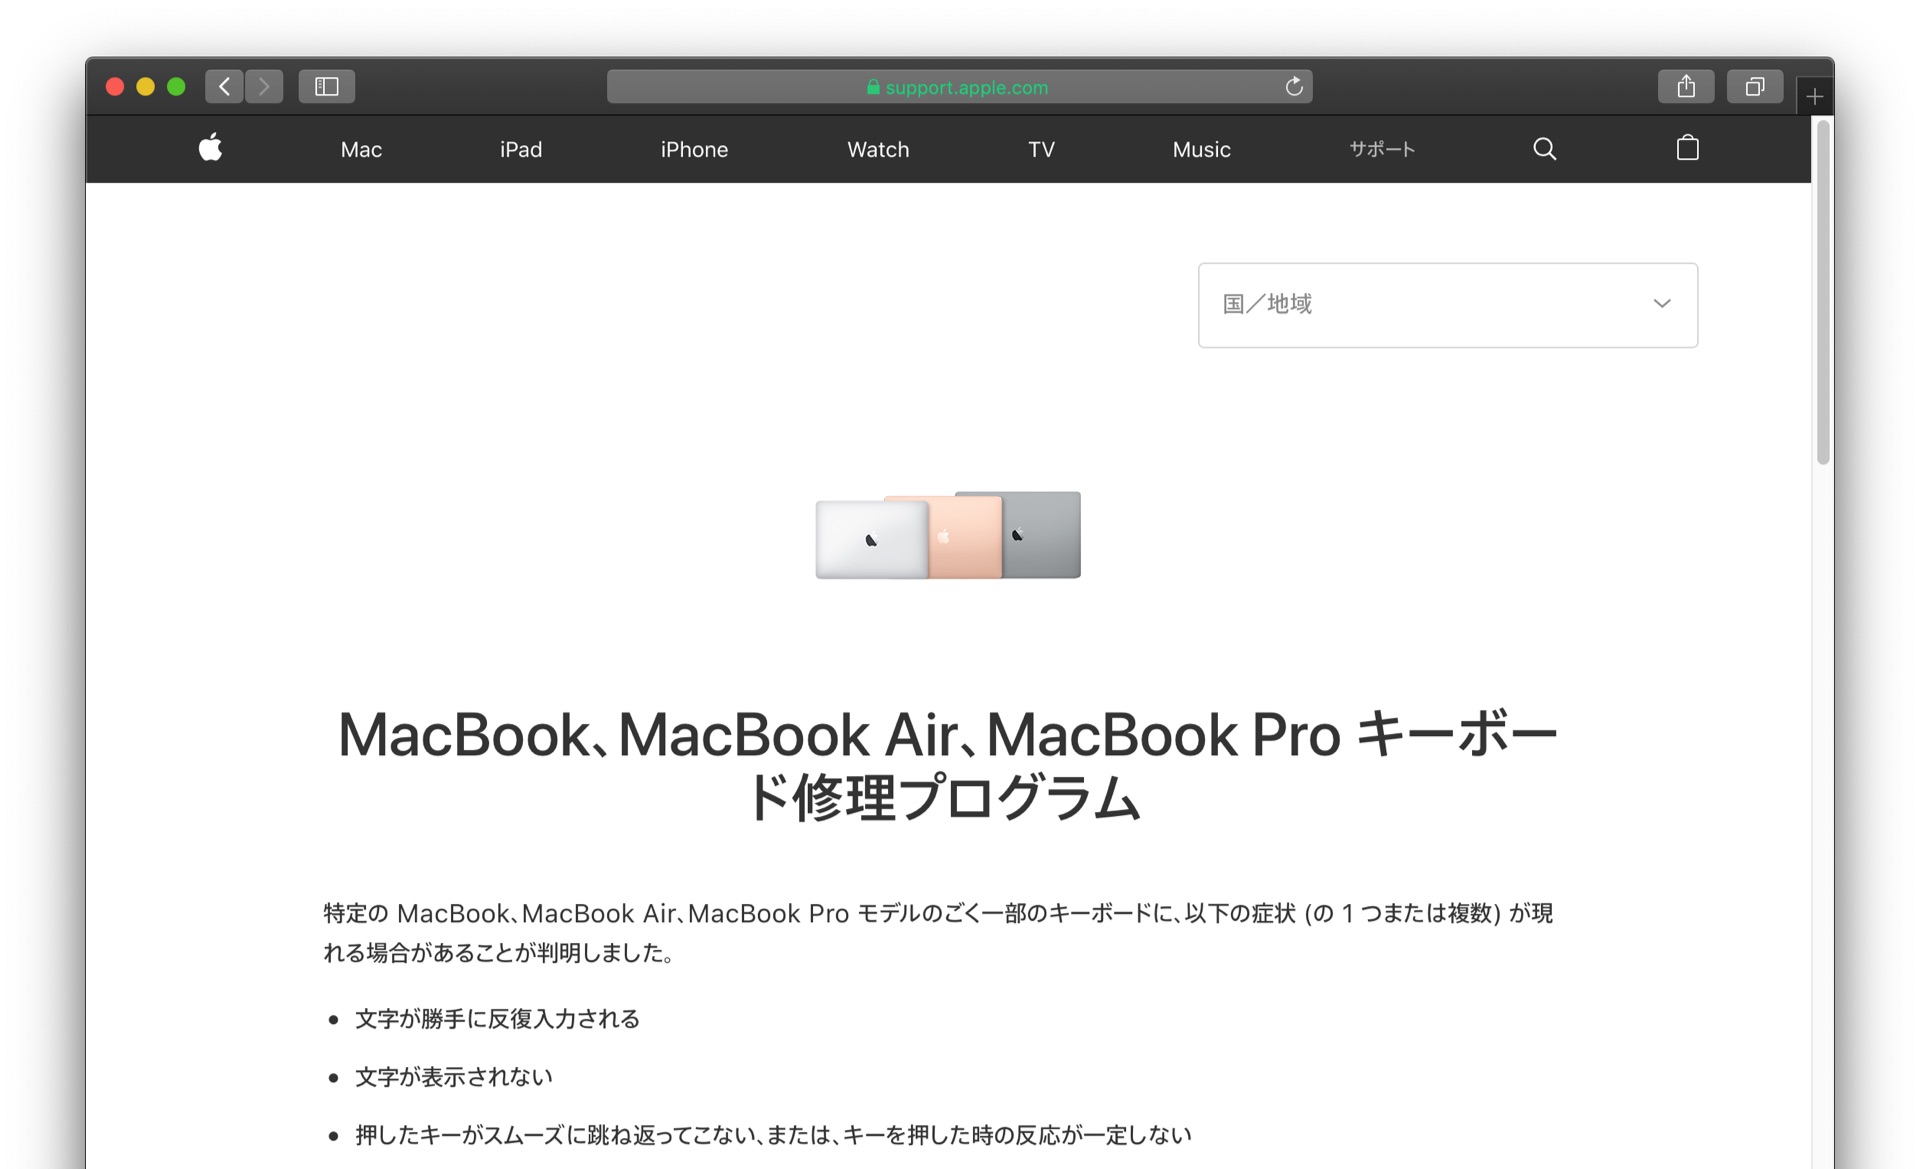 MacBook、MacBook Air、MacBook Pro キーボード修理プログラム